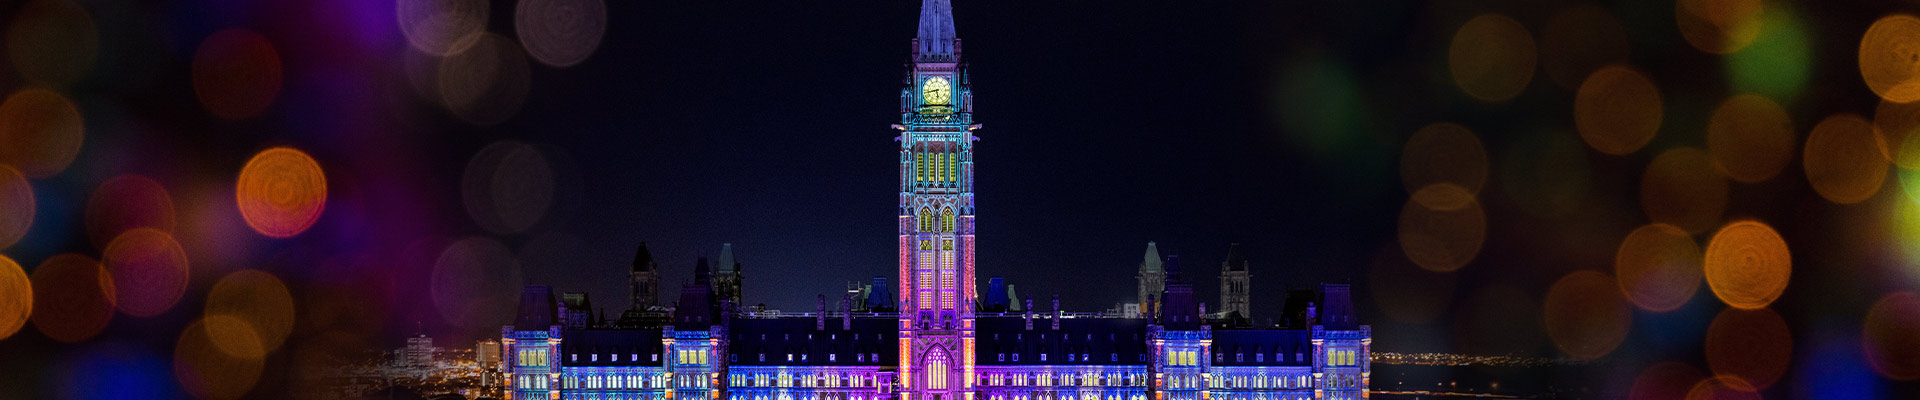 Le parlement d'Ottawa illuminé par des milliers de lumières de Noel